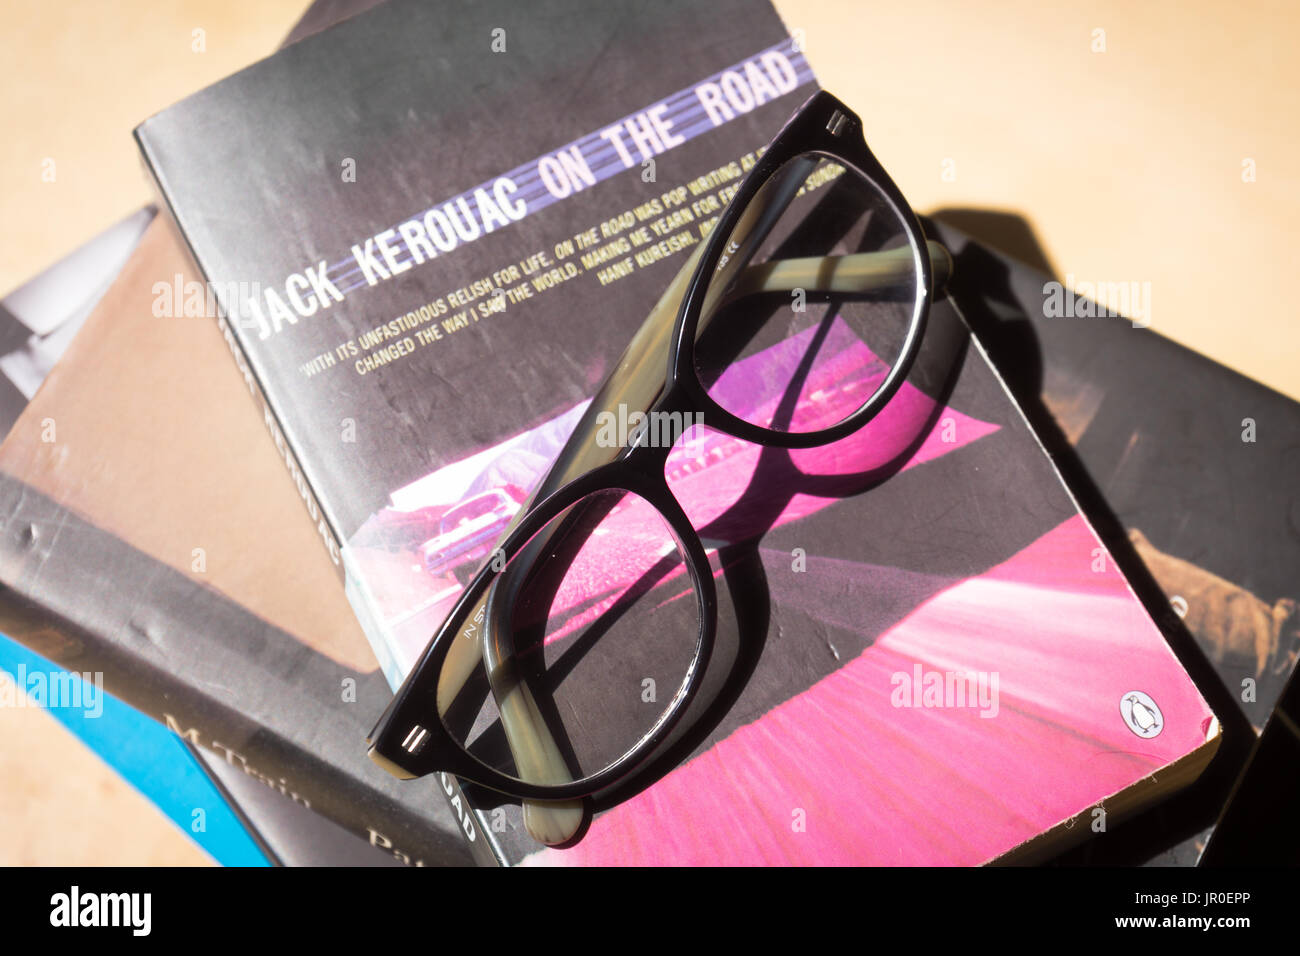 Gafas de lectura en la parte superior de una pila de libros con uno de ellos es la famosa novela de Jack Kerouac "en el camino" - concepto de lectura Foto de stock